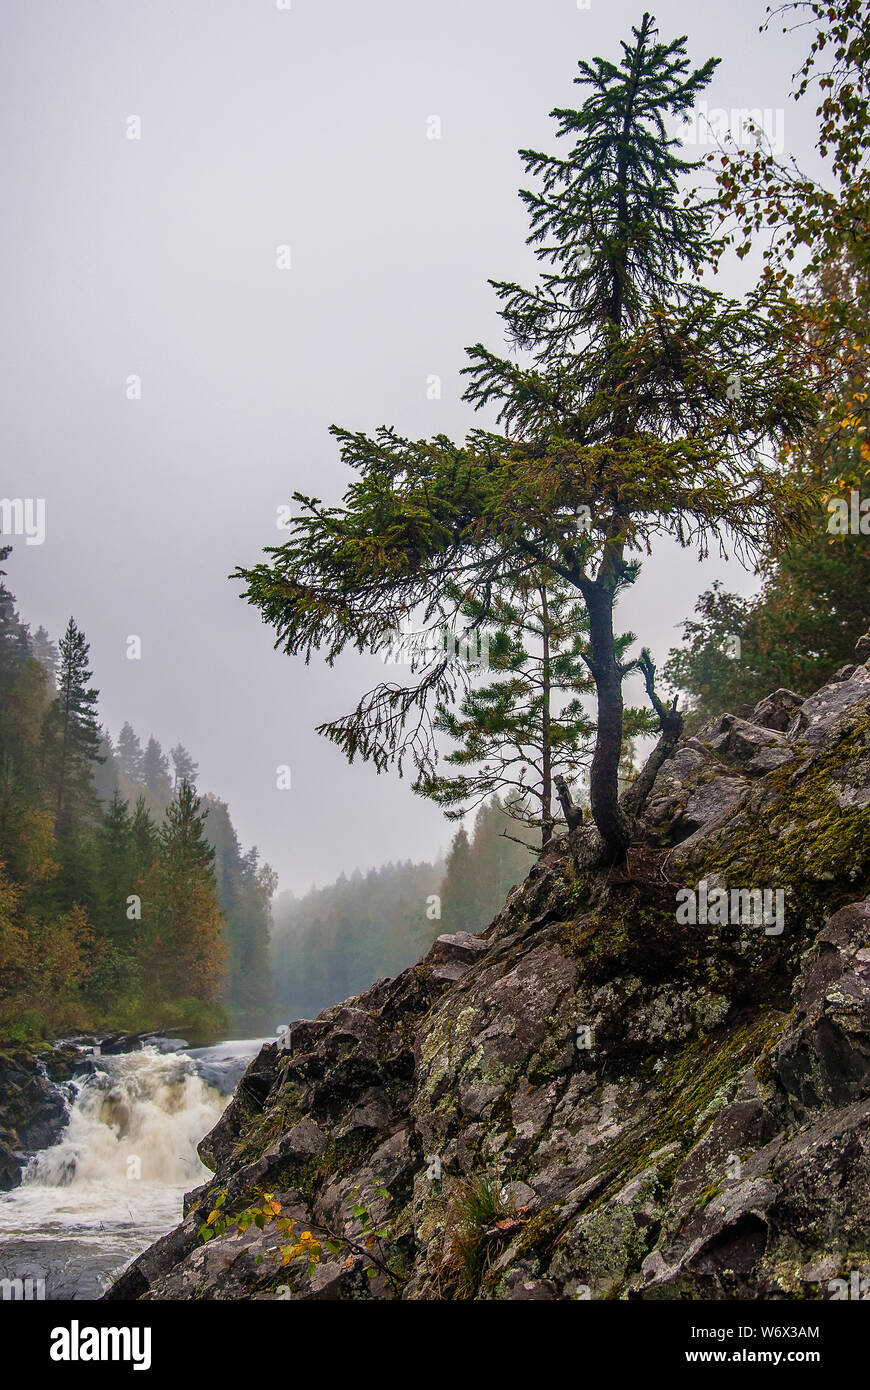 Kivach Wasserfall in Karelien, Russland. Natur Landschaft des russischen Nordens Stockfoto